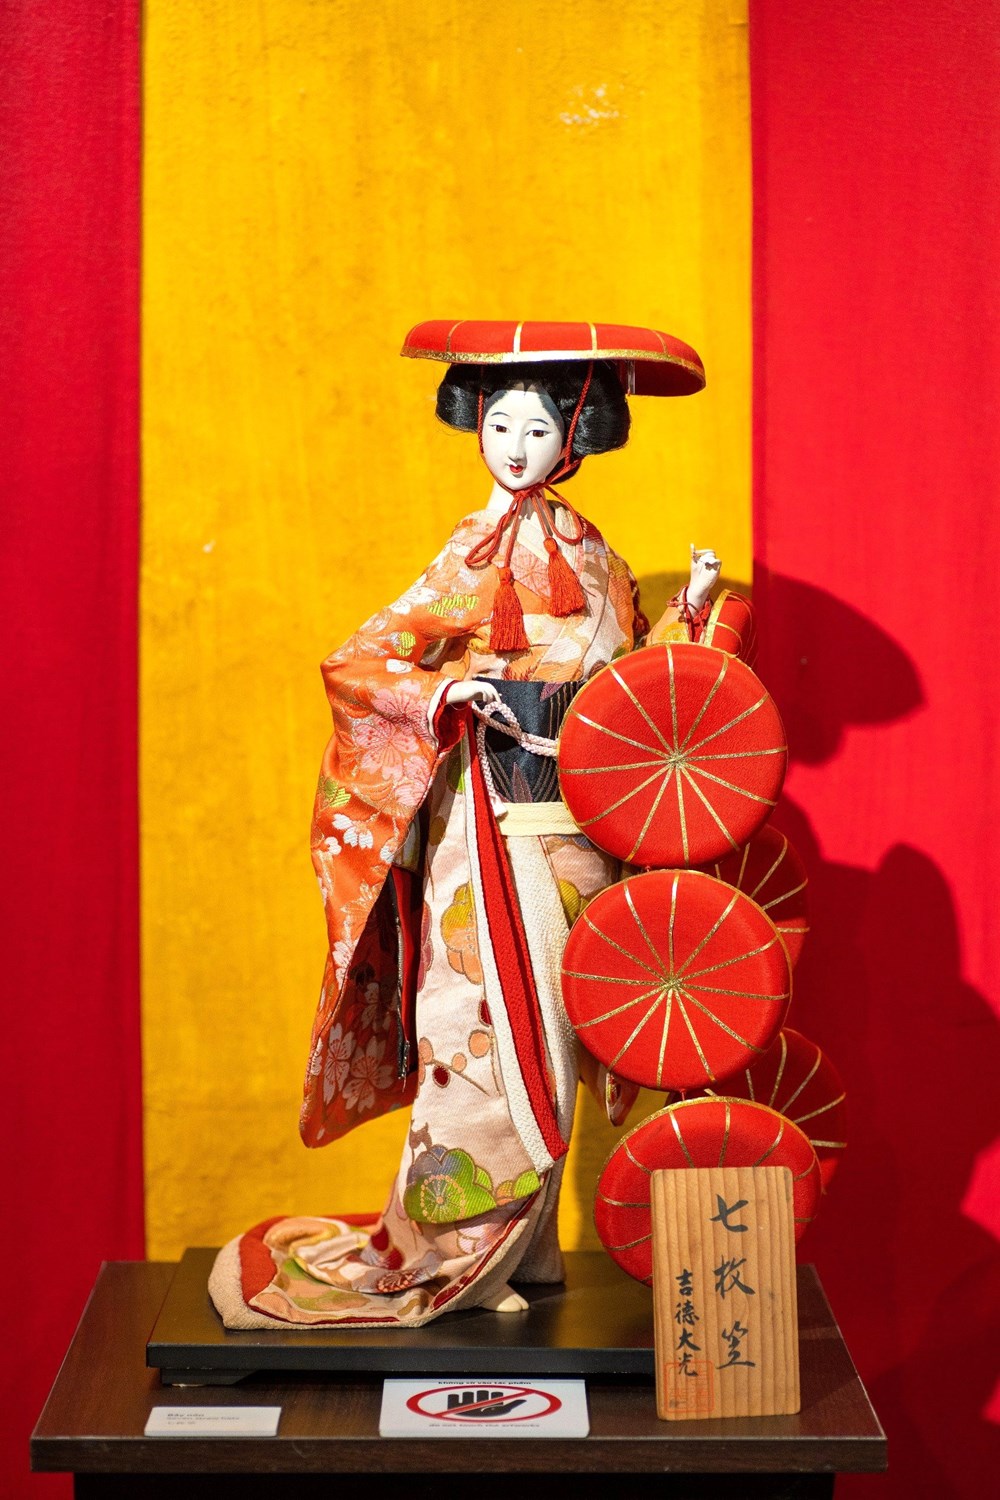 Triển lãm búp bê Nhật Bản- Đối thoại với dòng tranh Ukiyo-e tại Hội An - ảnh 2